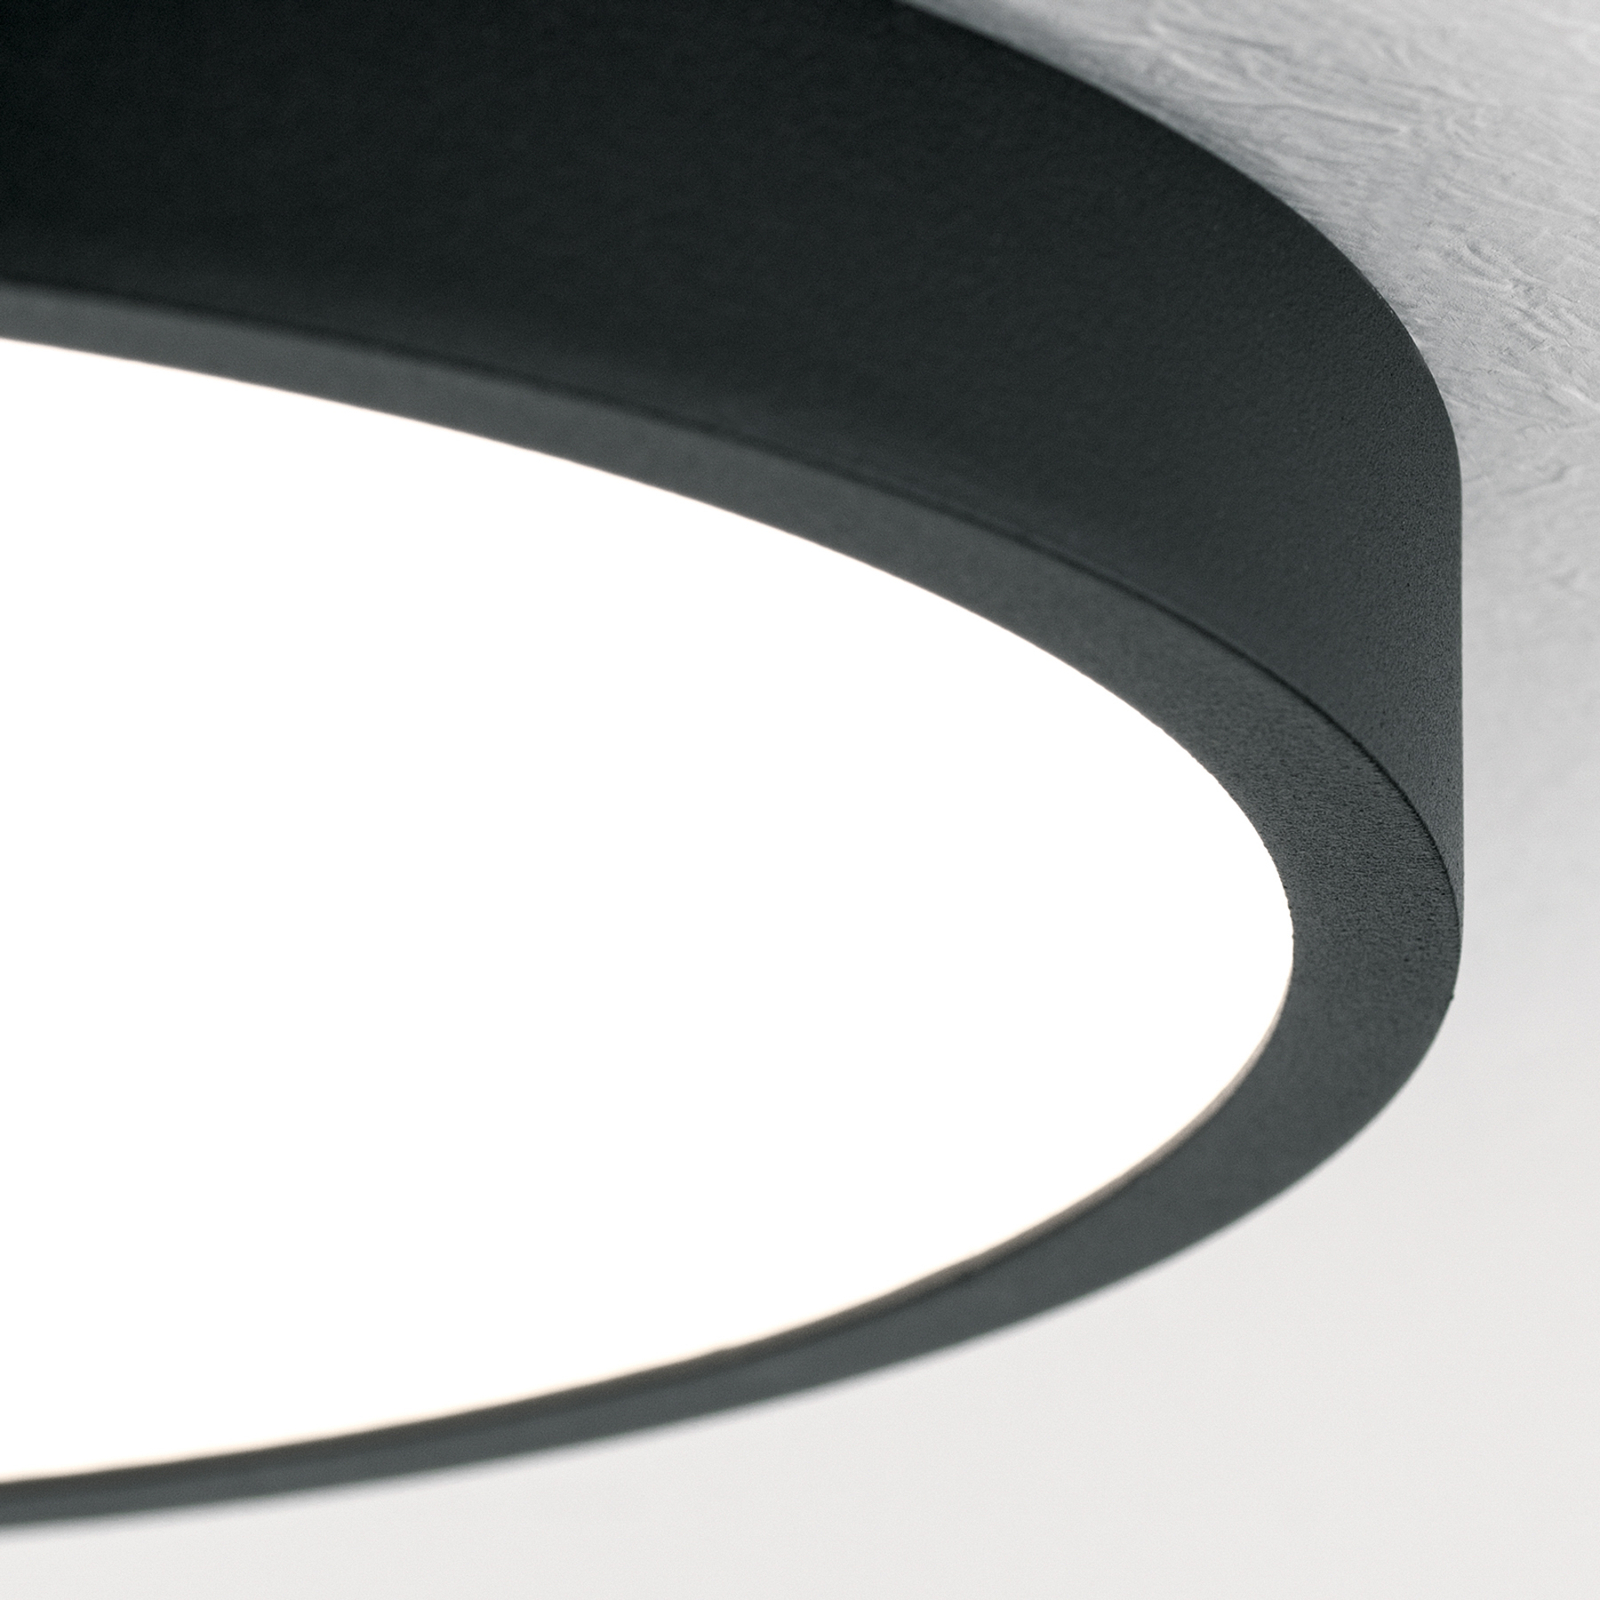 LED ceiling light Bully in black, 3,000 K, Ø24cm